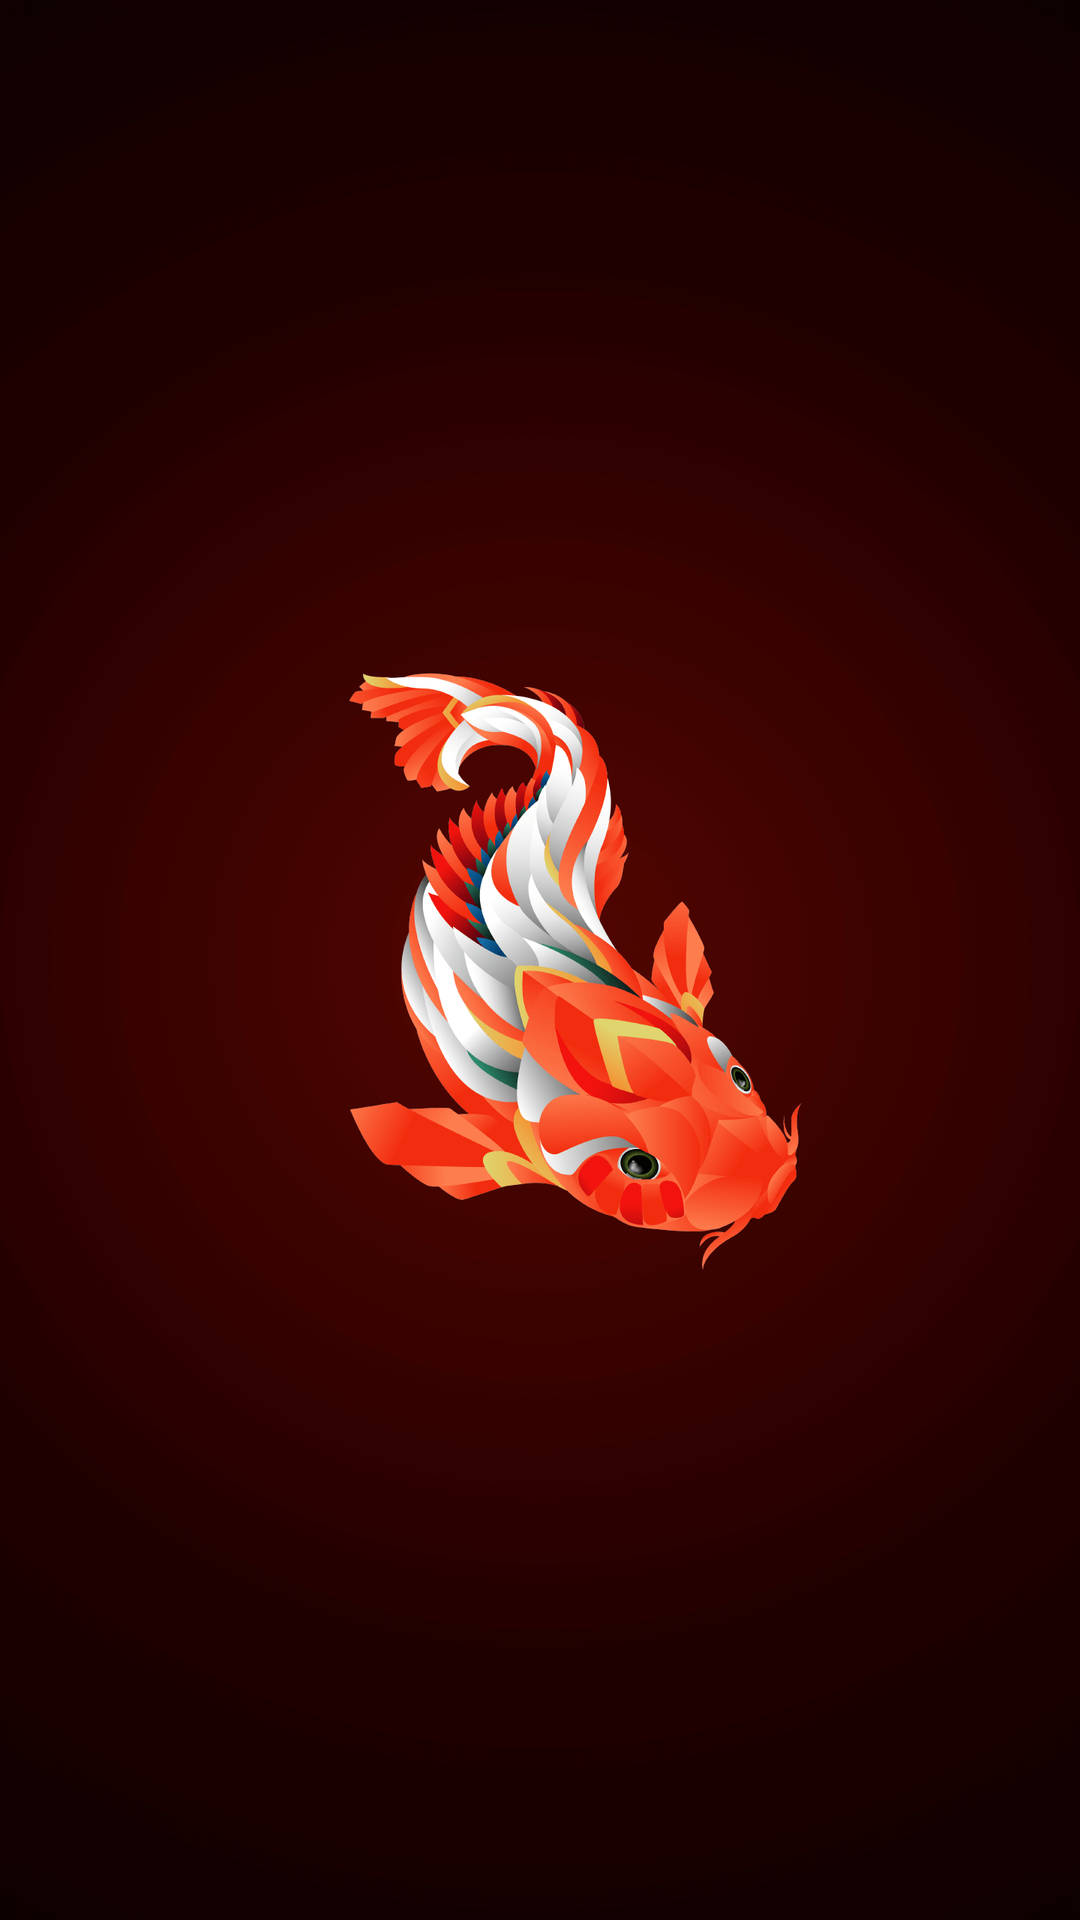 Download Koi Fish Digital Art Iphone Wallpaper | Wallpapers.Com